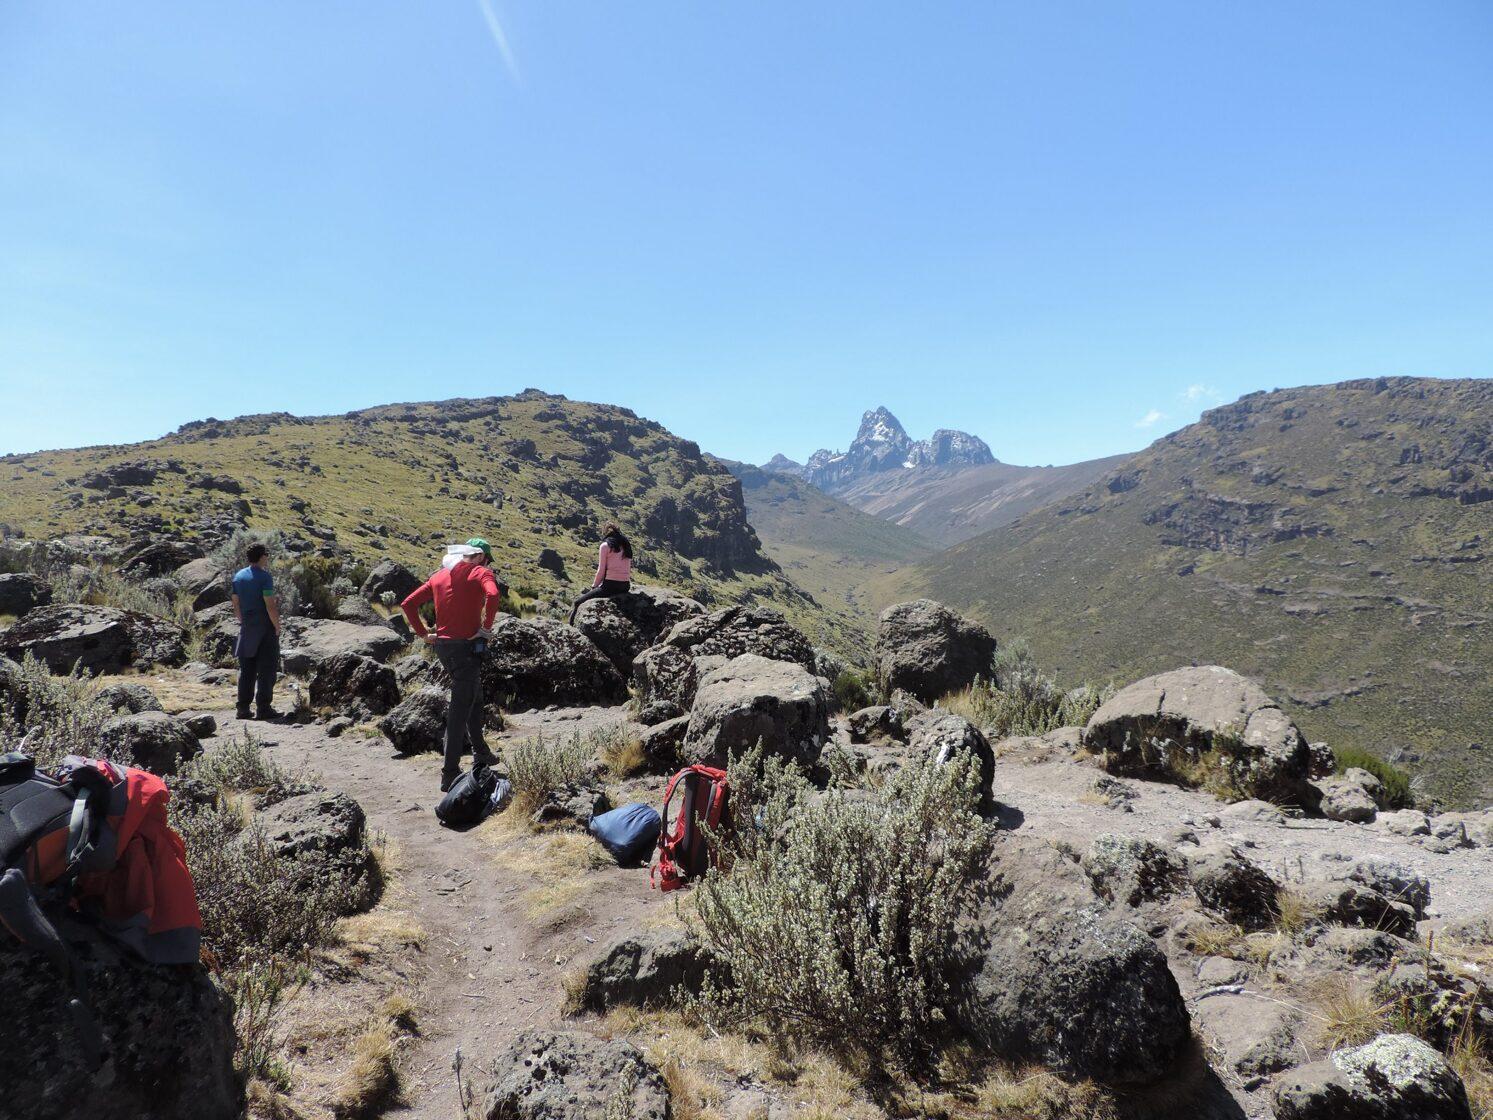 Mountain Kenya/Mountain Adventures / YHA Kenya Travel/Mount Kenya Trekking/Hiking/Climbing and Group Guided Walking Tours.